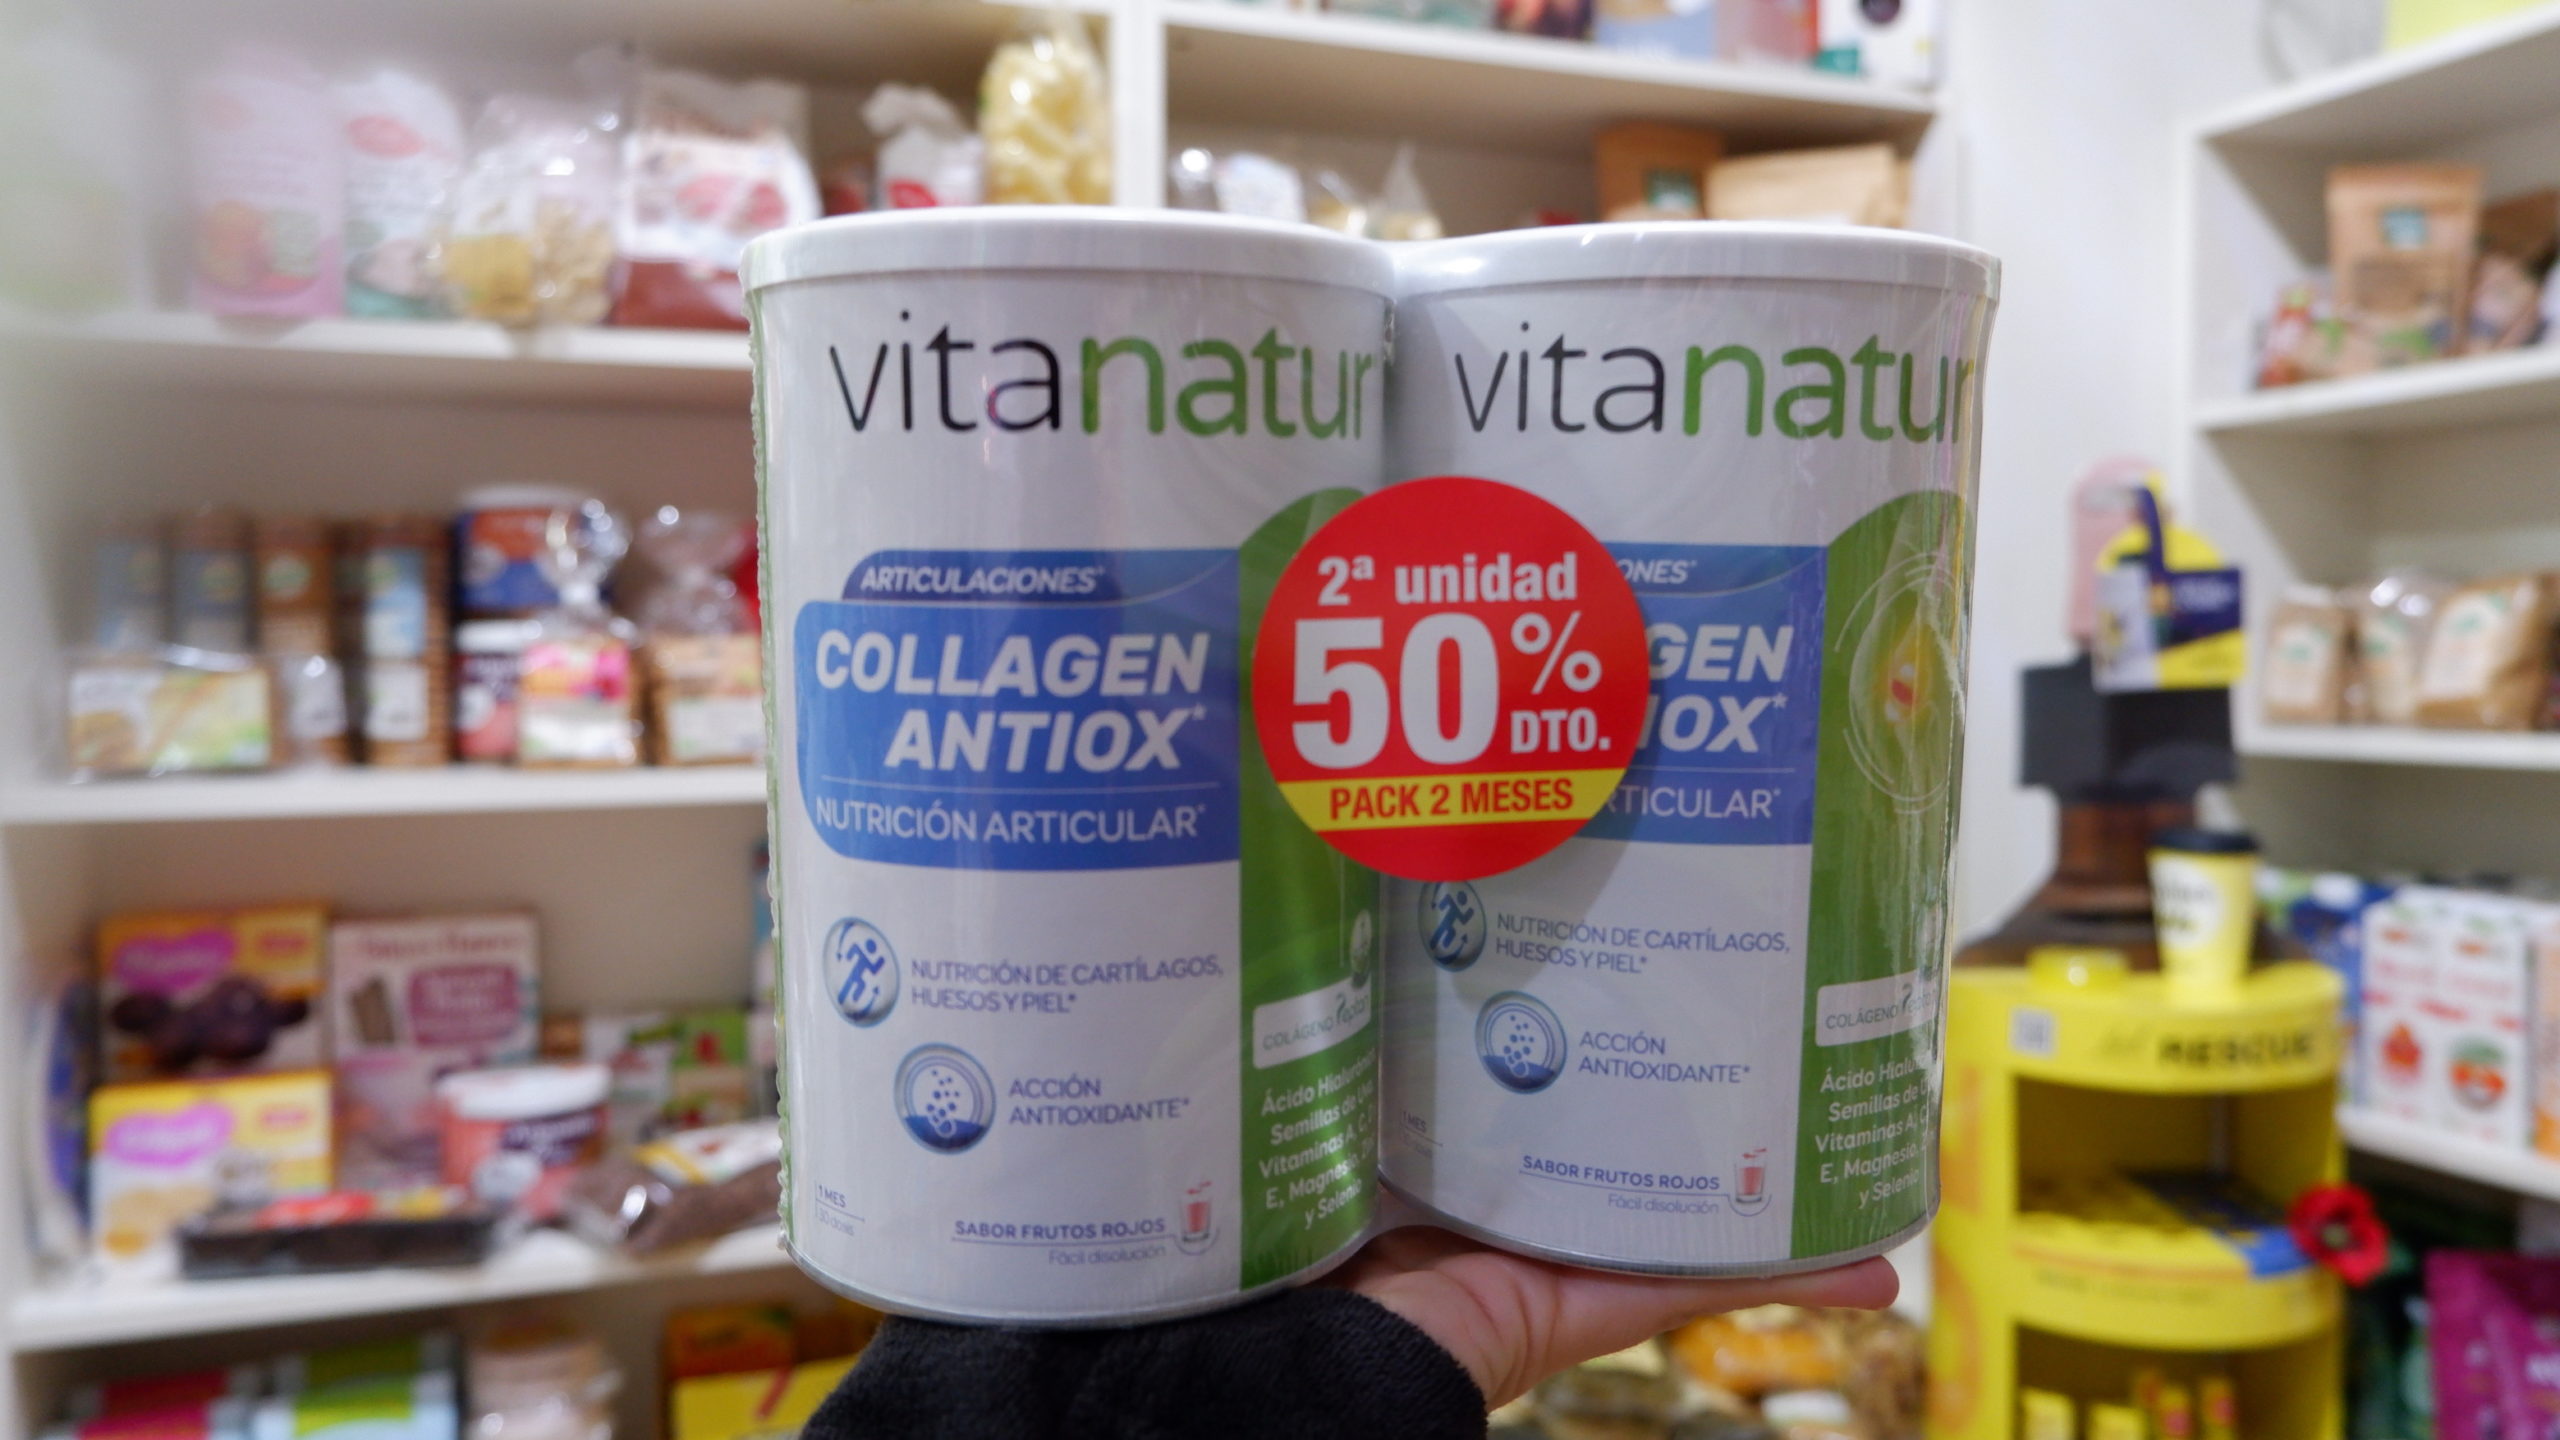 Collagen Antiox 2º unidad al -50%